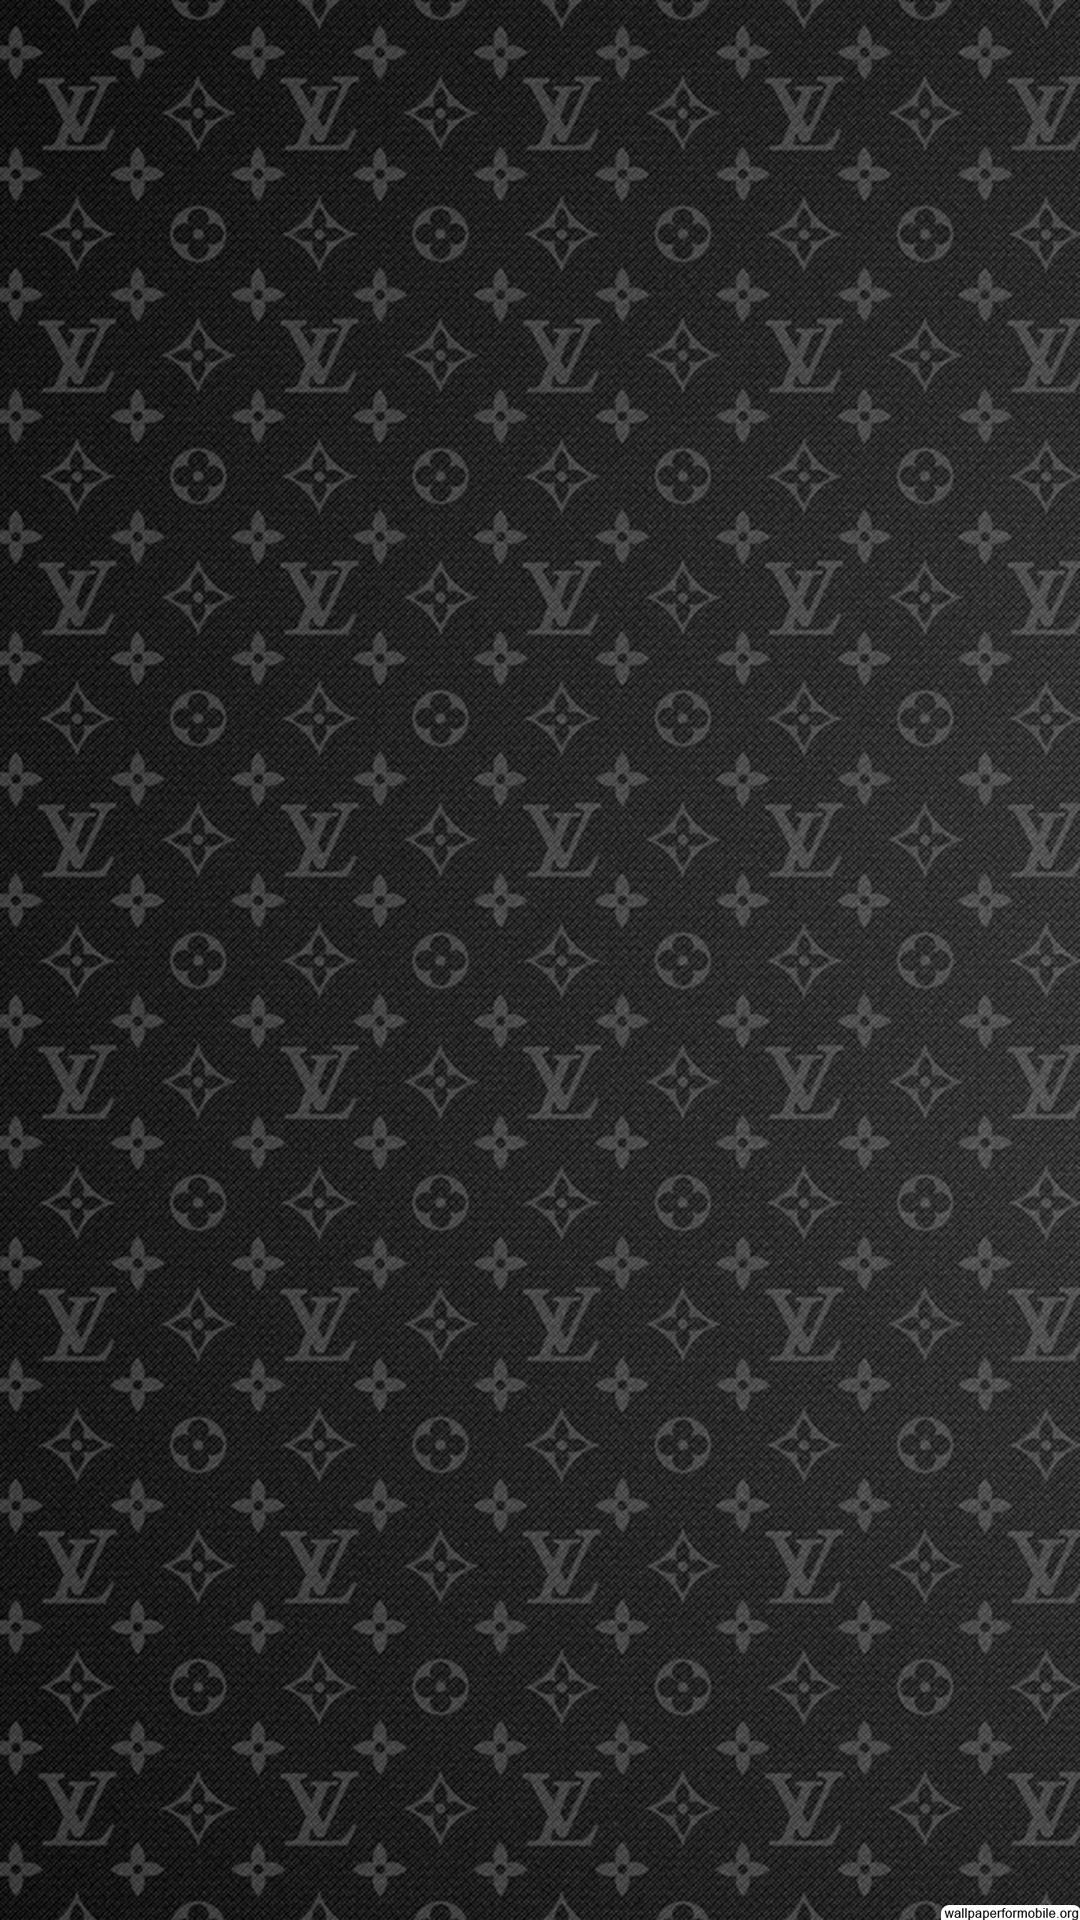 Louis Vuitton Supreme Iphone Wallpaper Jaguar Clubs Of